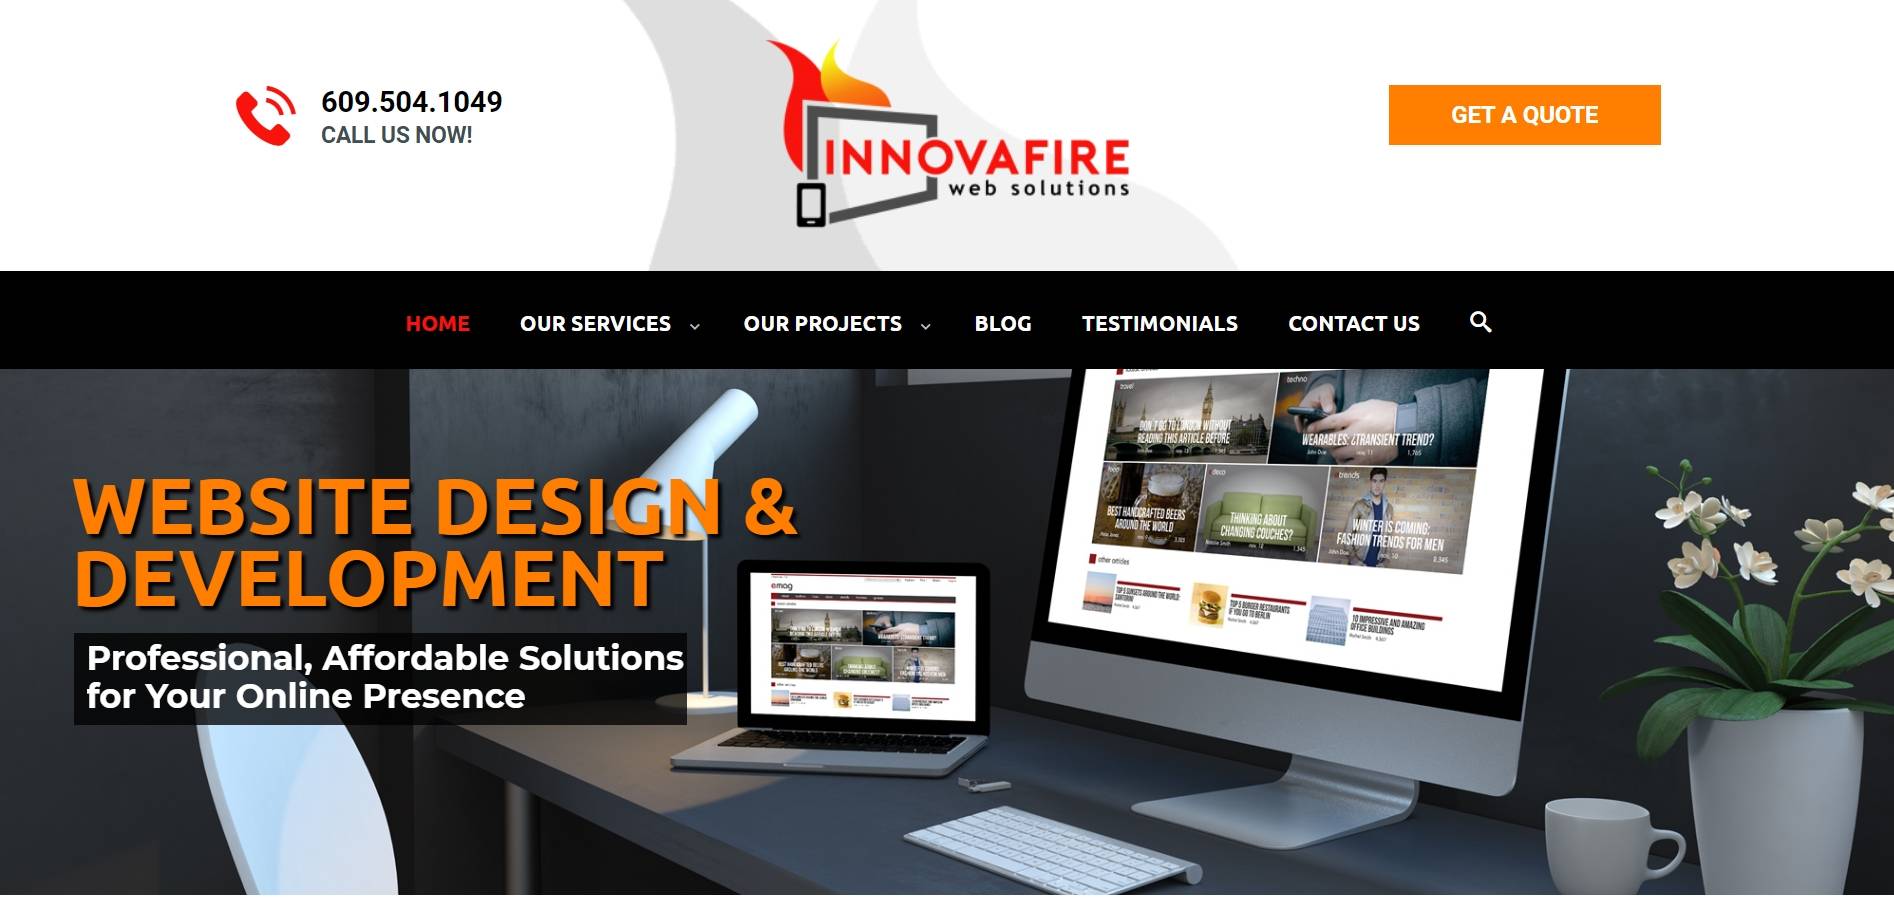 InnovaFire Web Solutions